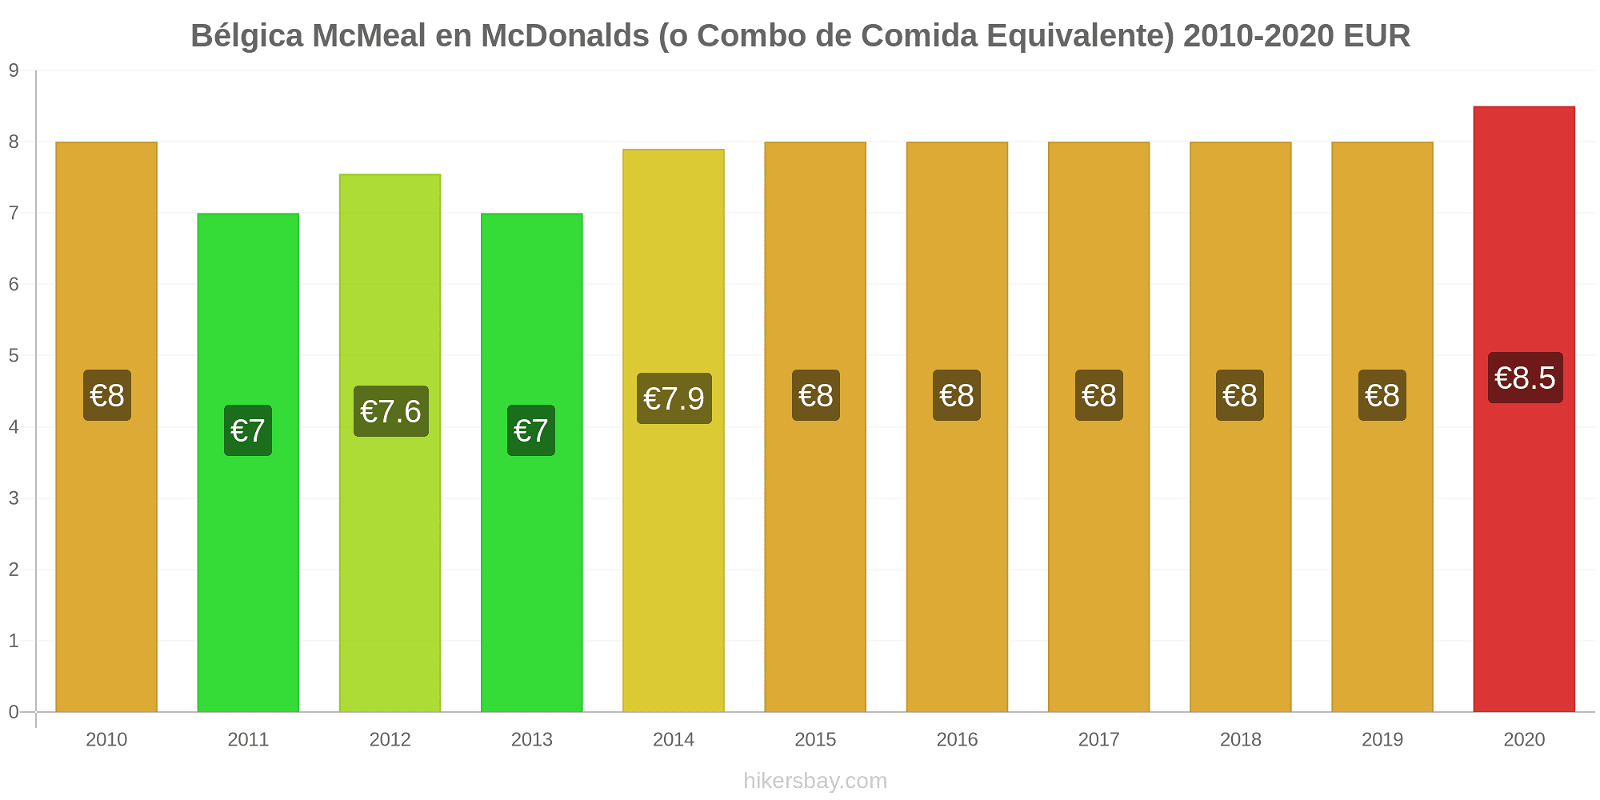 Bélgica cambios de precios McMeal en McDonalds (o menú equivalente) hikersbay.com